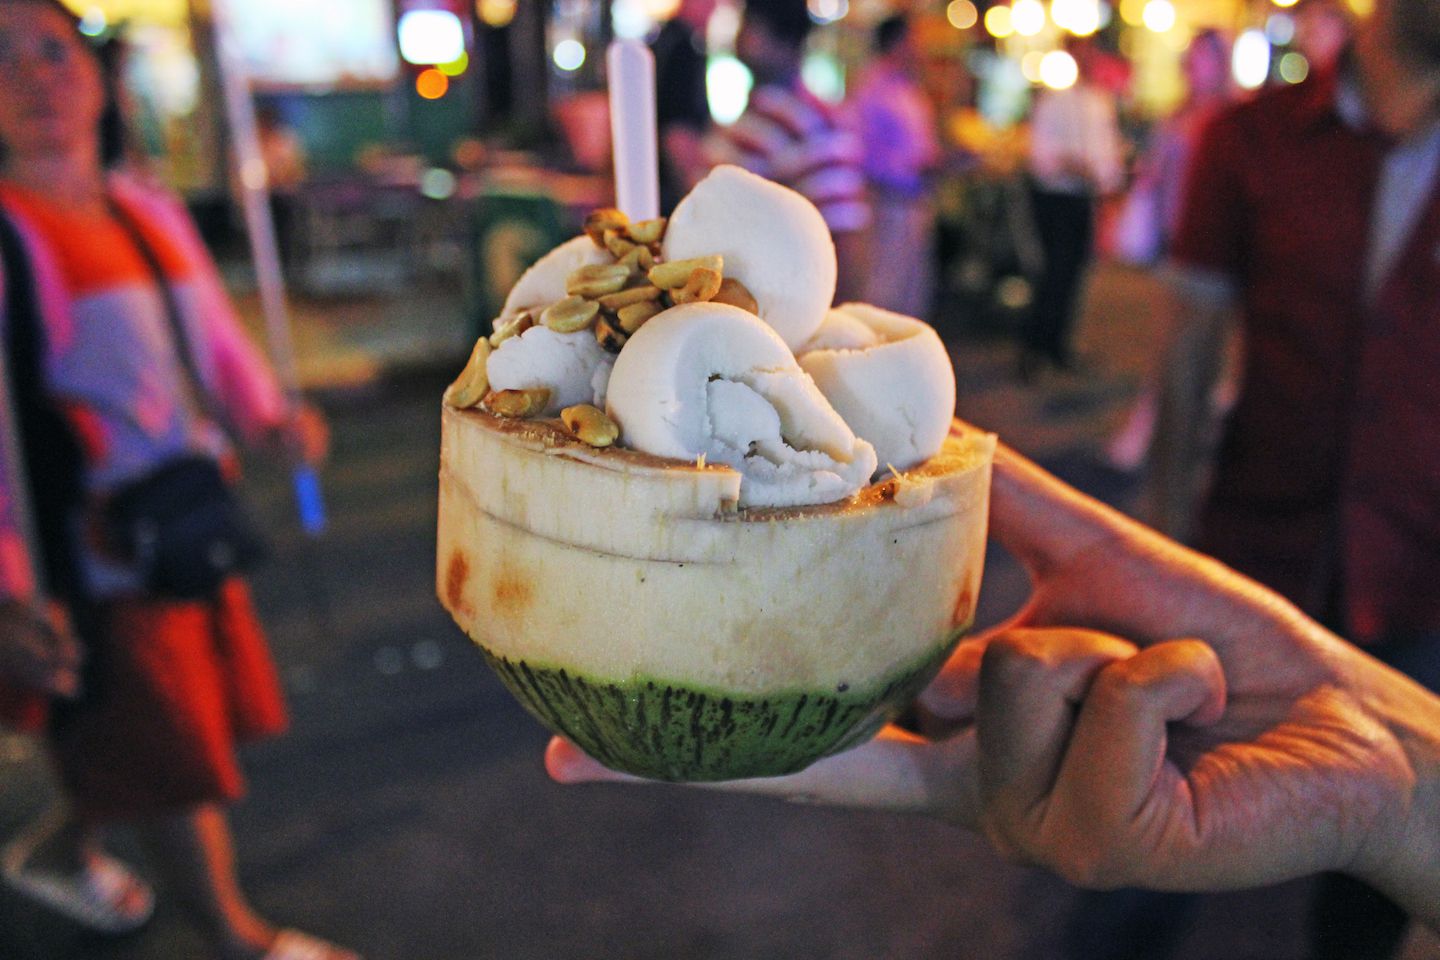 Coconut ice cream in a coconut